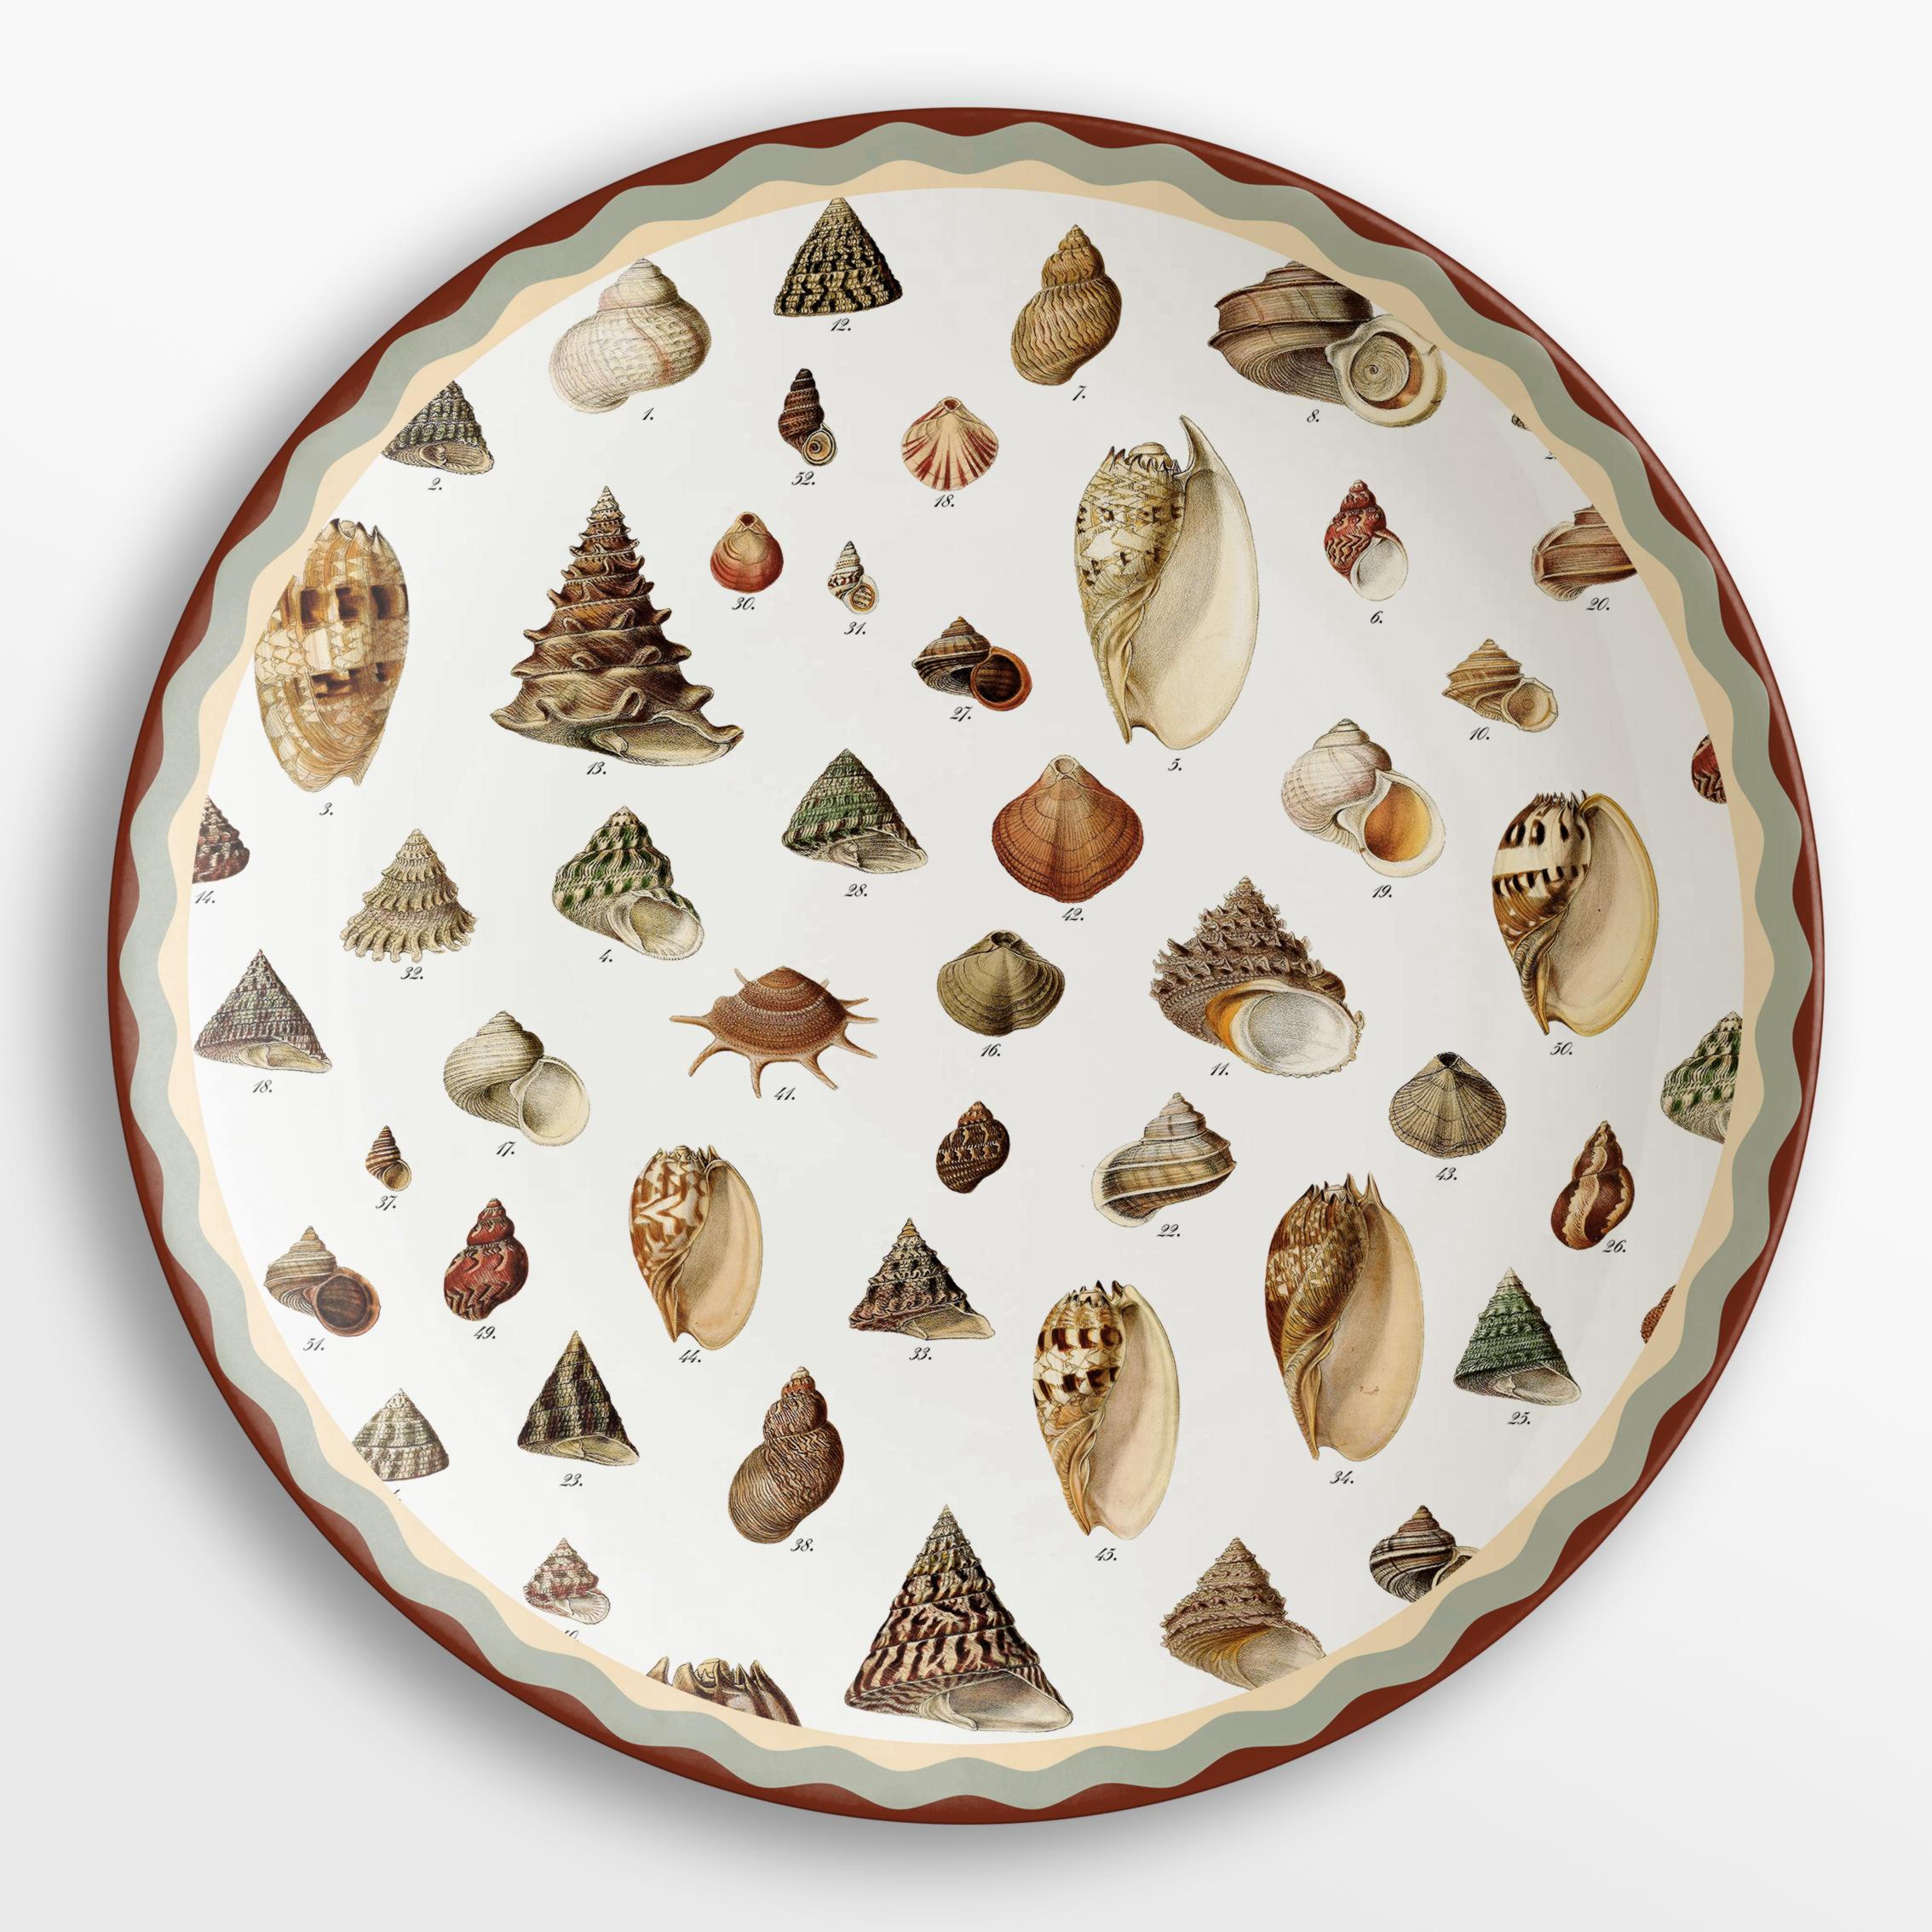 La collection du cabinet de Curiosités s'inspire des pièces du même nom qui, au XVIe siècle, rassemblaient des objets et des sujets de toutes sortes. Dans cette collection, environ 450 éléments différents sont répartis en 12 familles et permettent